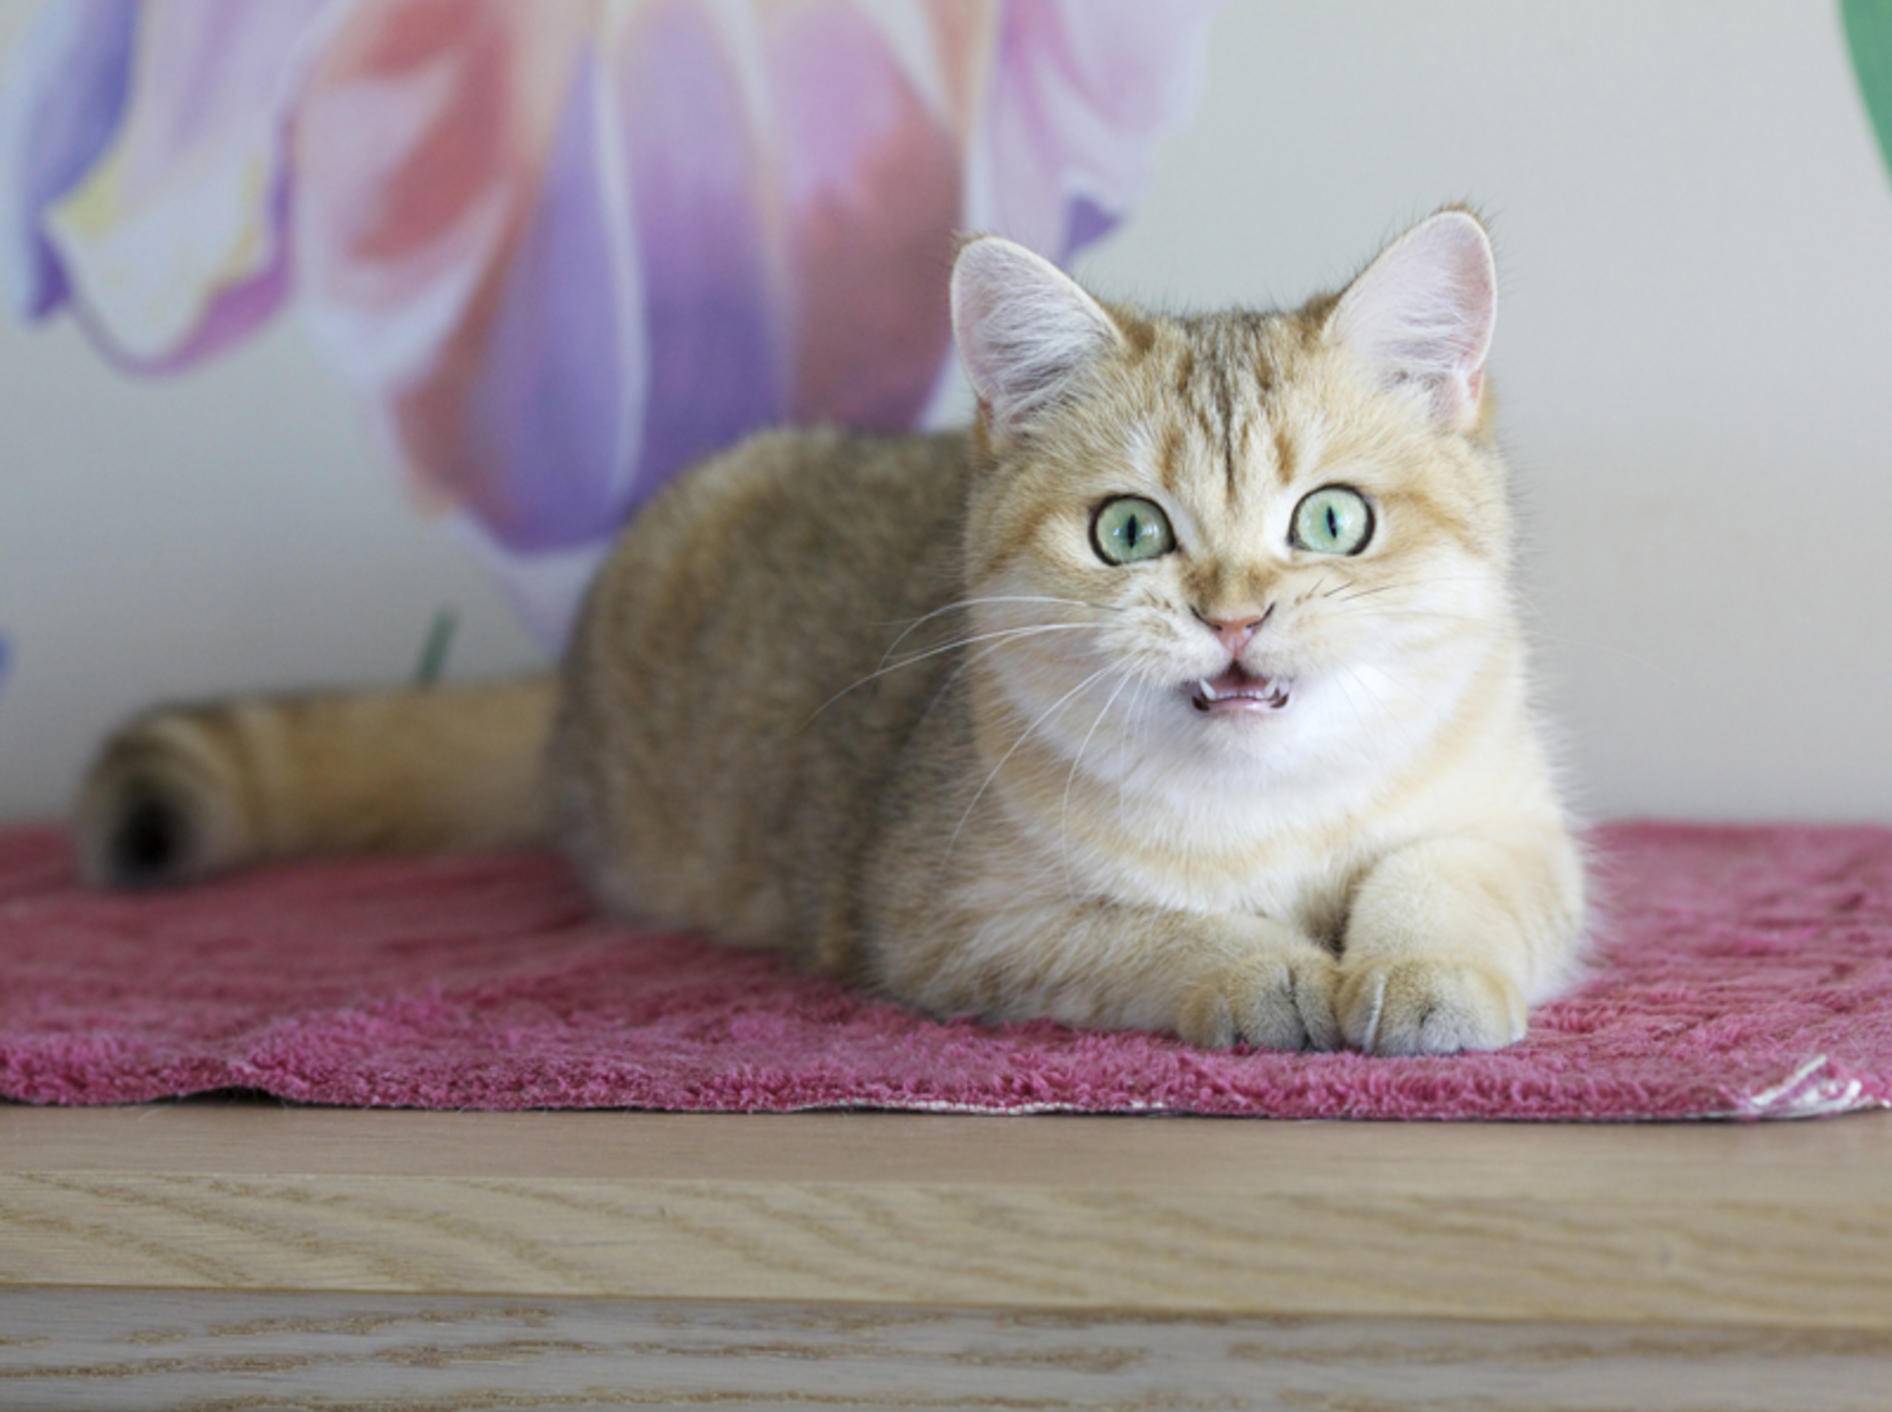 Was will diese Britisch-Kurzhaar-Katze uns mit ihrem Gurren wohl mitteilen? – Shutterstock / Alina Simakova